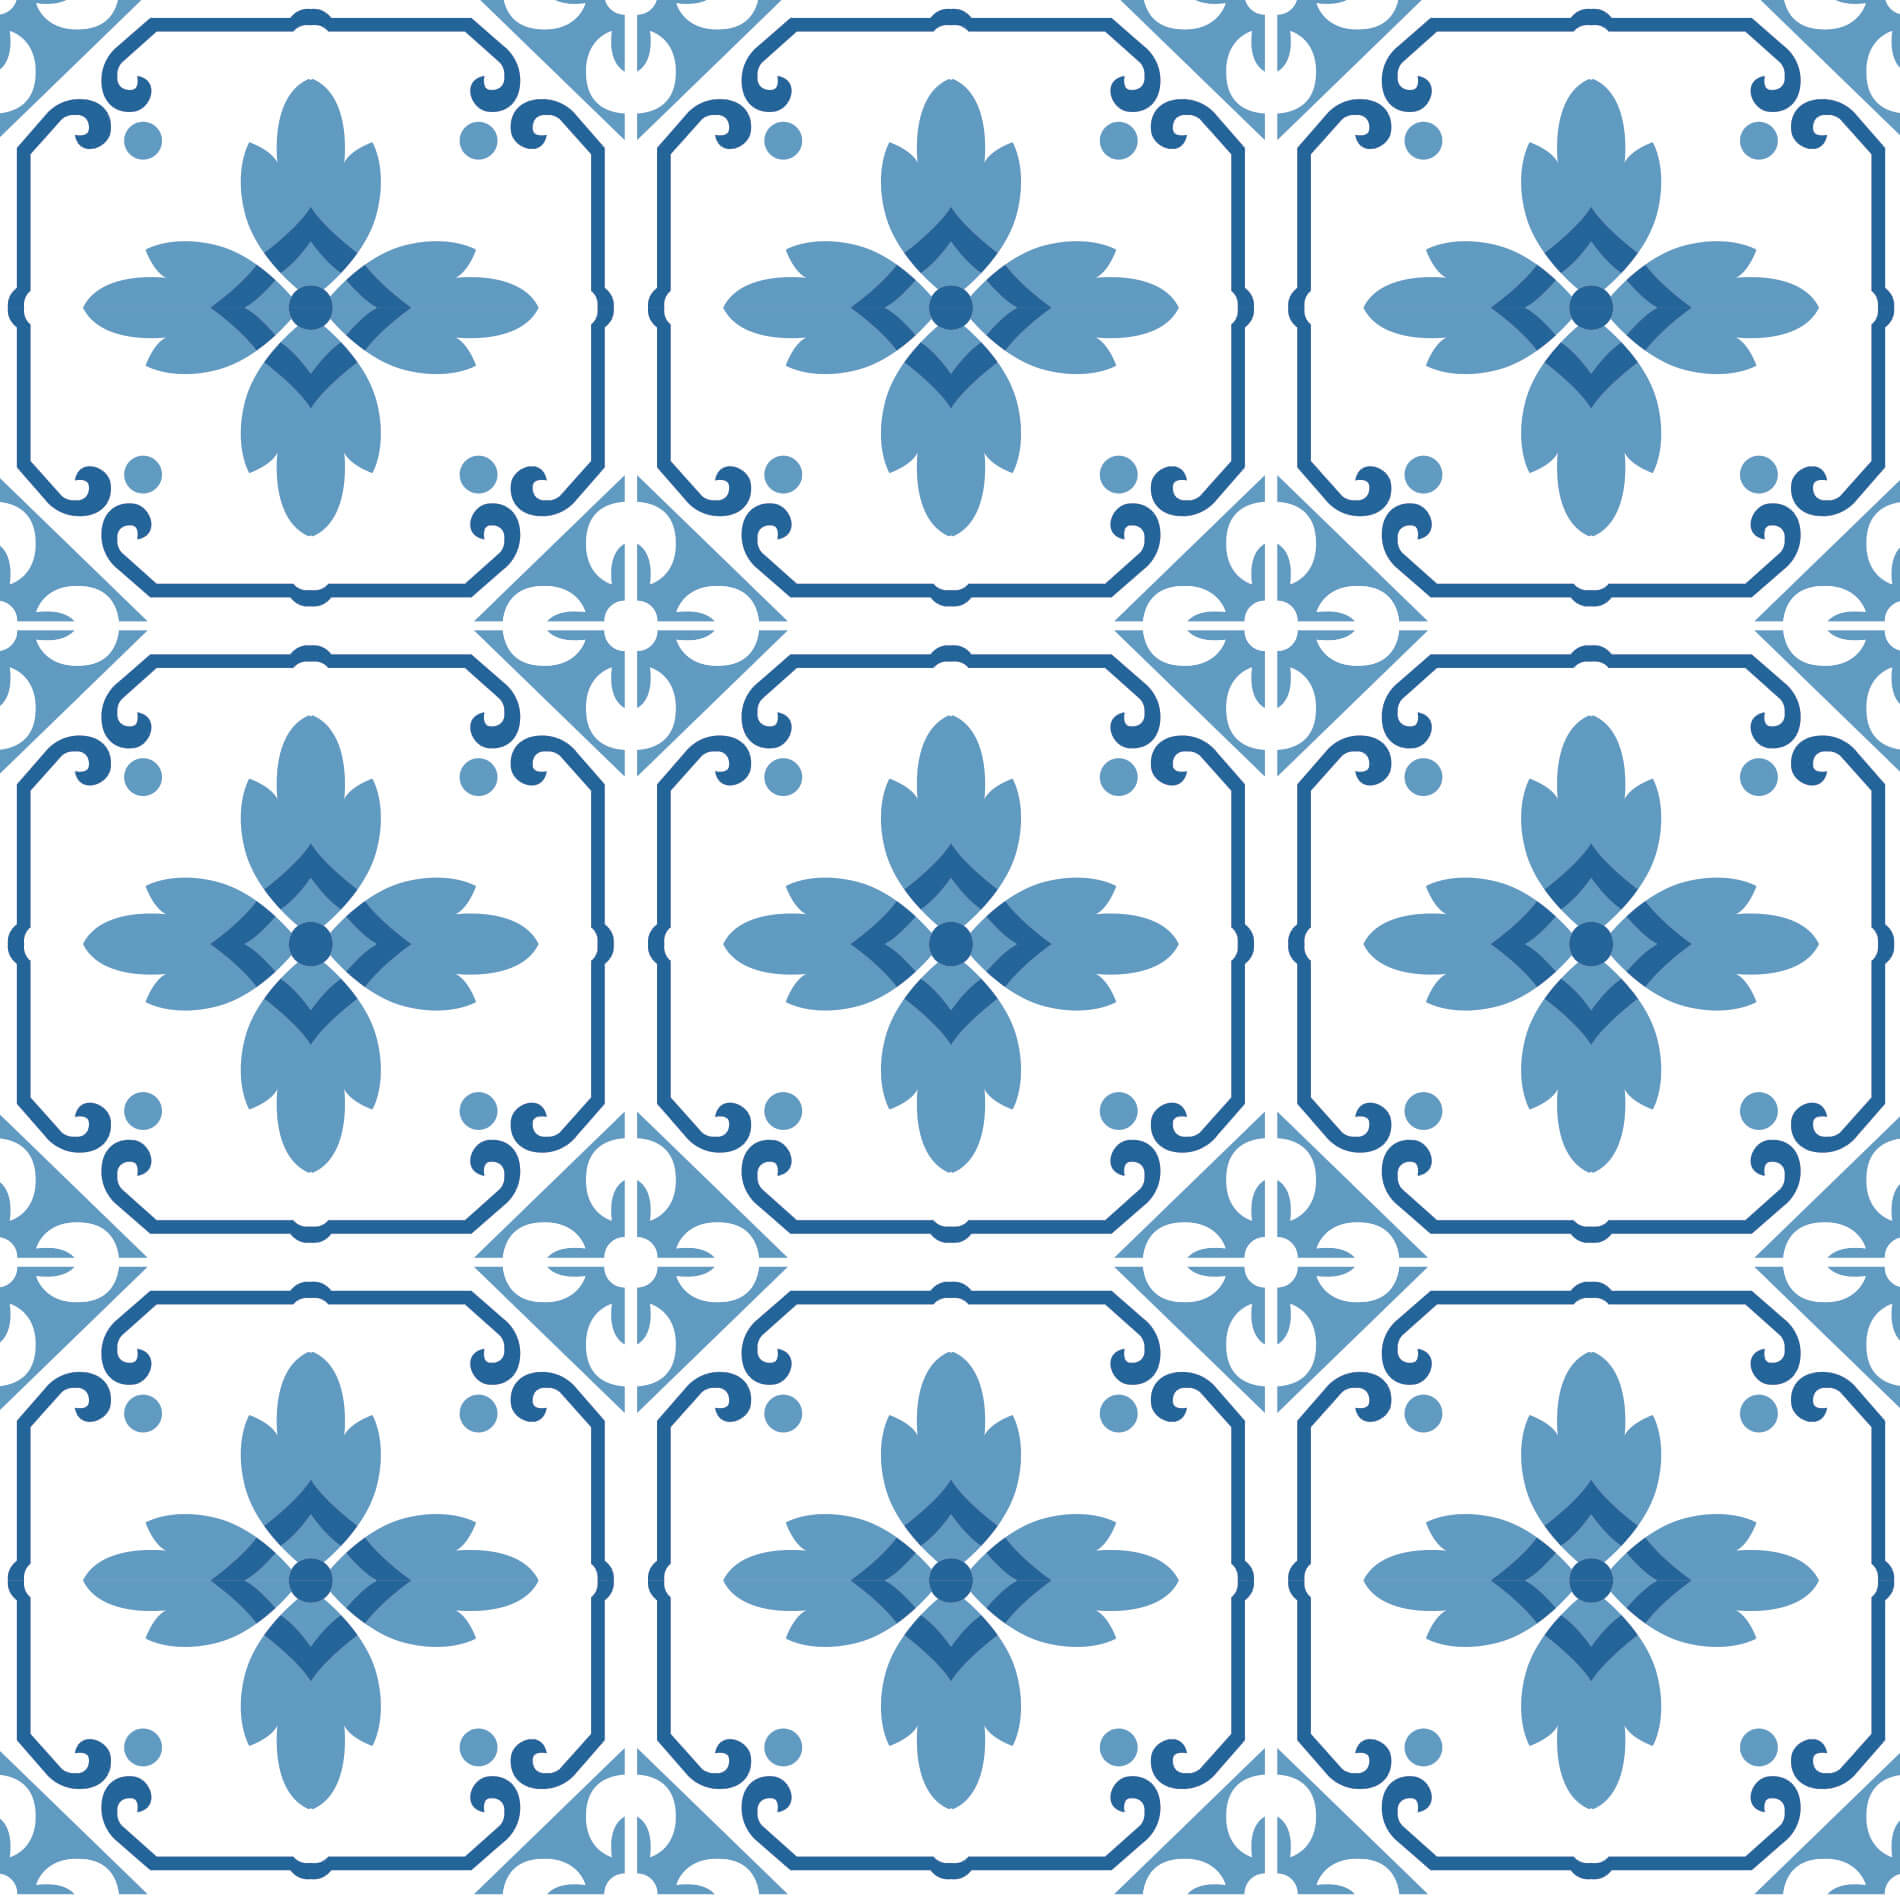 Adesivo de Azulejo Portugal Ladrilho Hidráulico